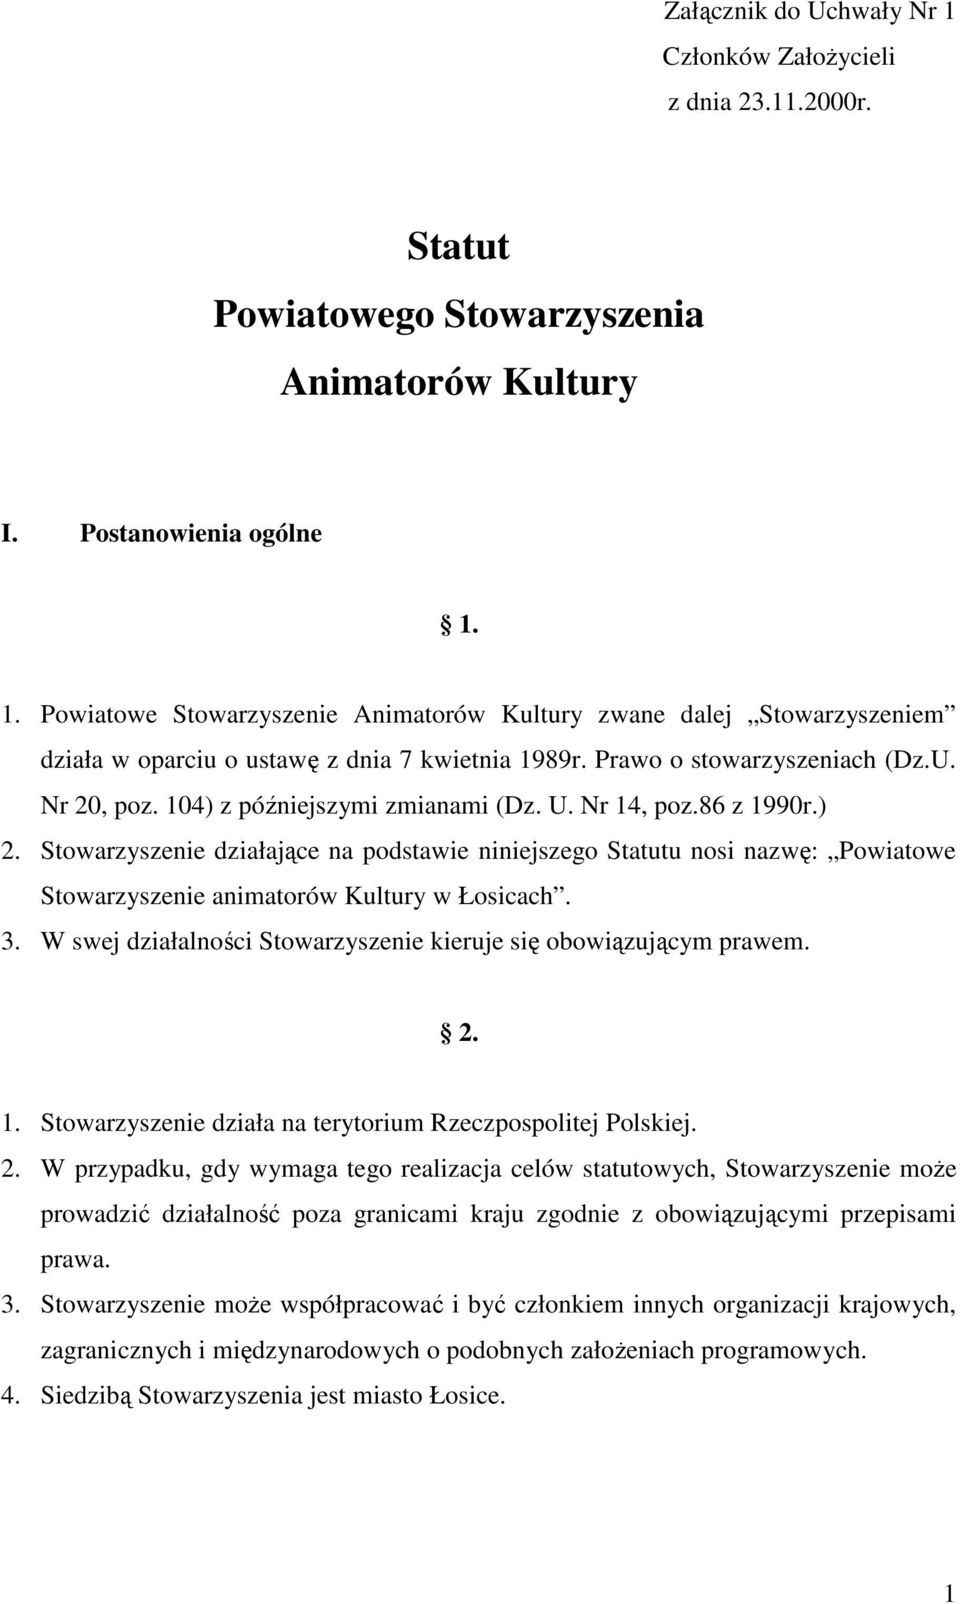 Stowarzyszenie działające na podstawie niniejszego Statutu nosi nazwę: Powiatowe Stowarzyszenie animatorów Kultury w Łosicach. 3. W swej działalności Stowarzyszenie kieruje się obowiązującym prawem.